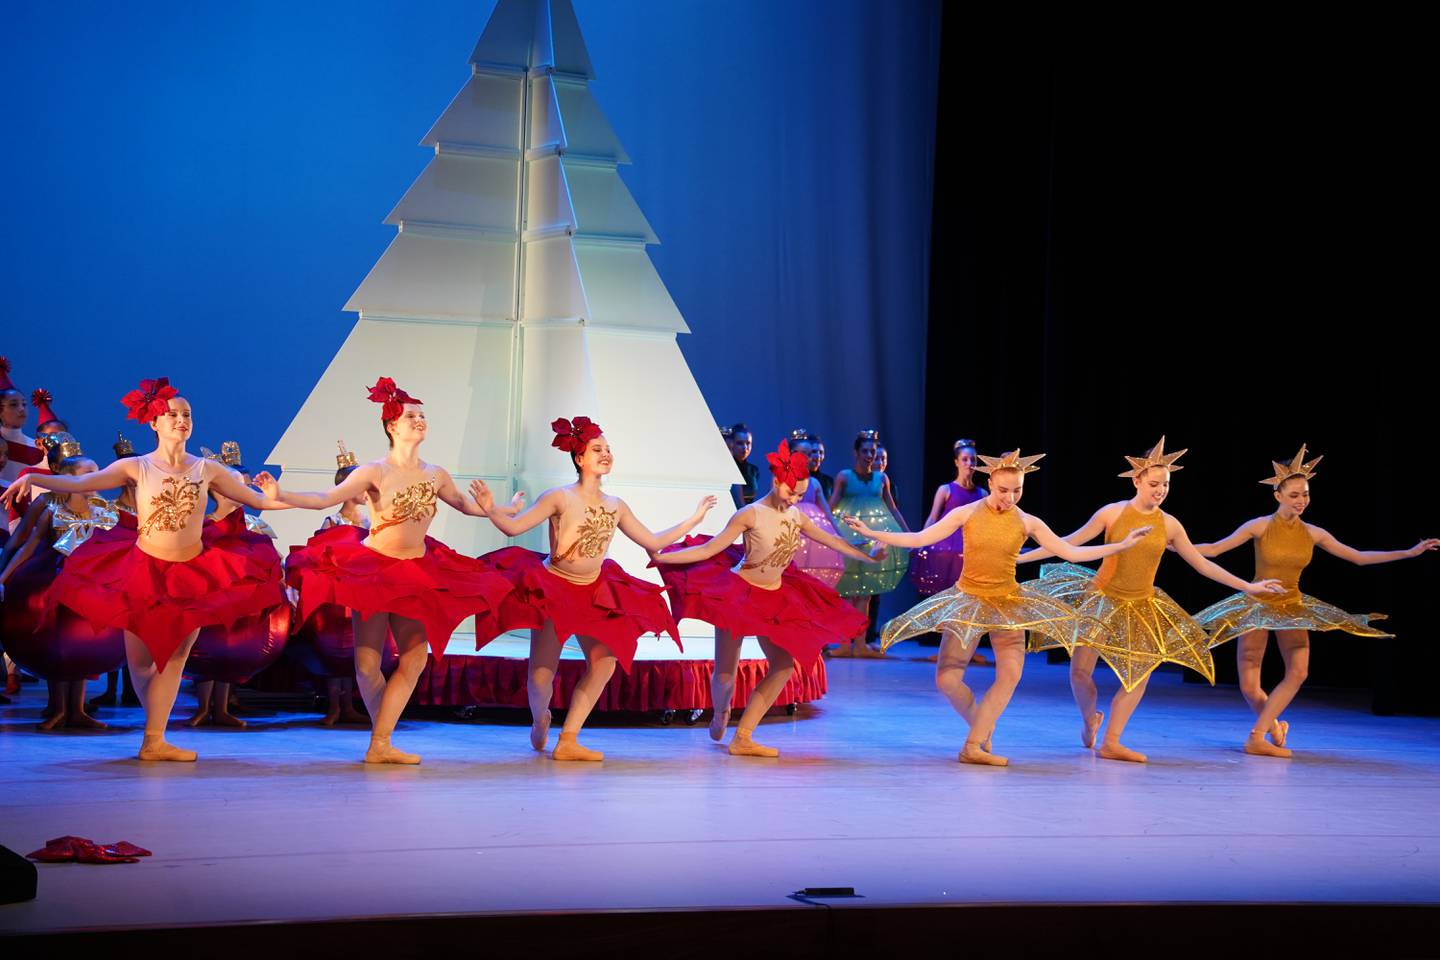 Las audiciones para el ballet en el Teatro Nacional se realizaron de manera exhaustiva durante todo el año.